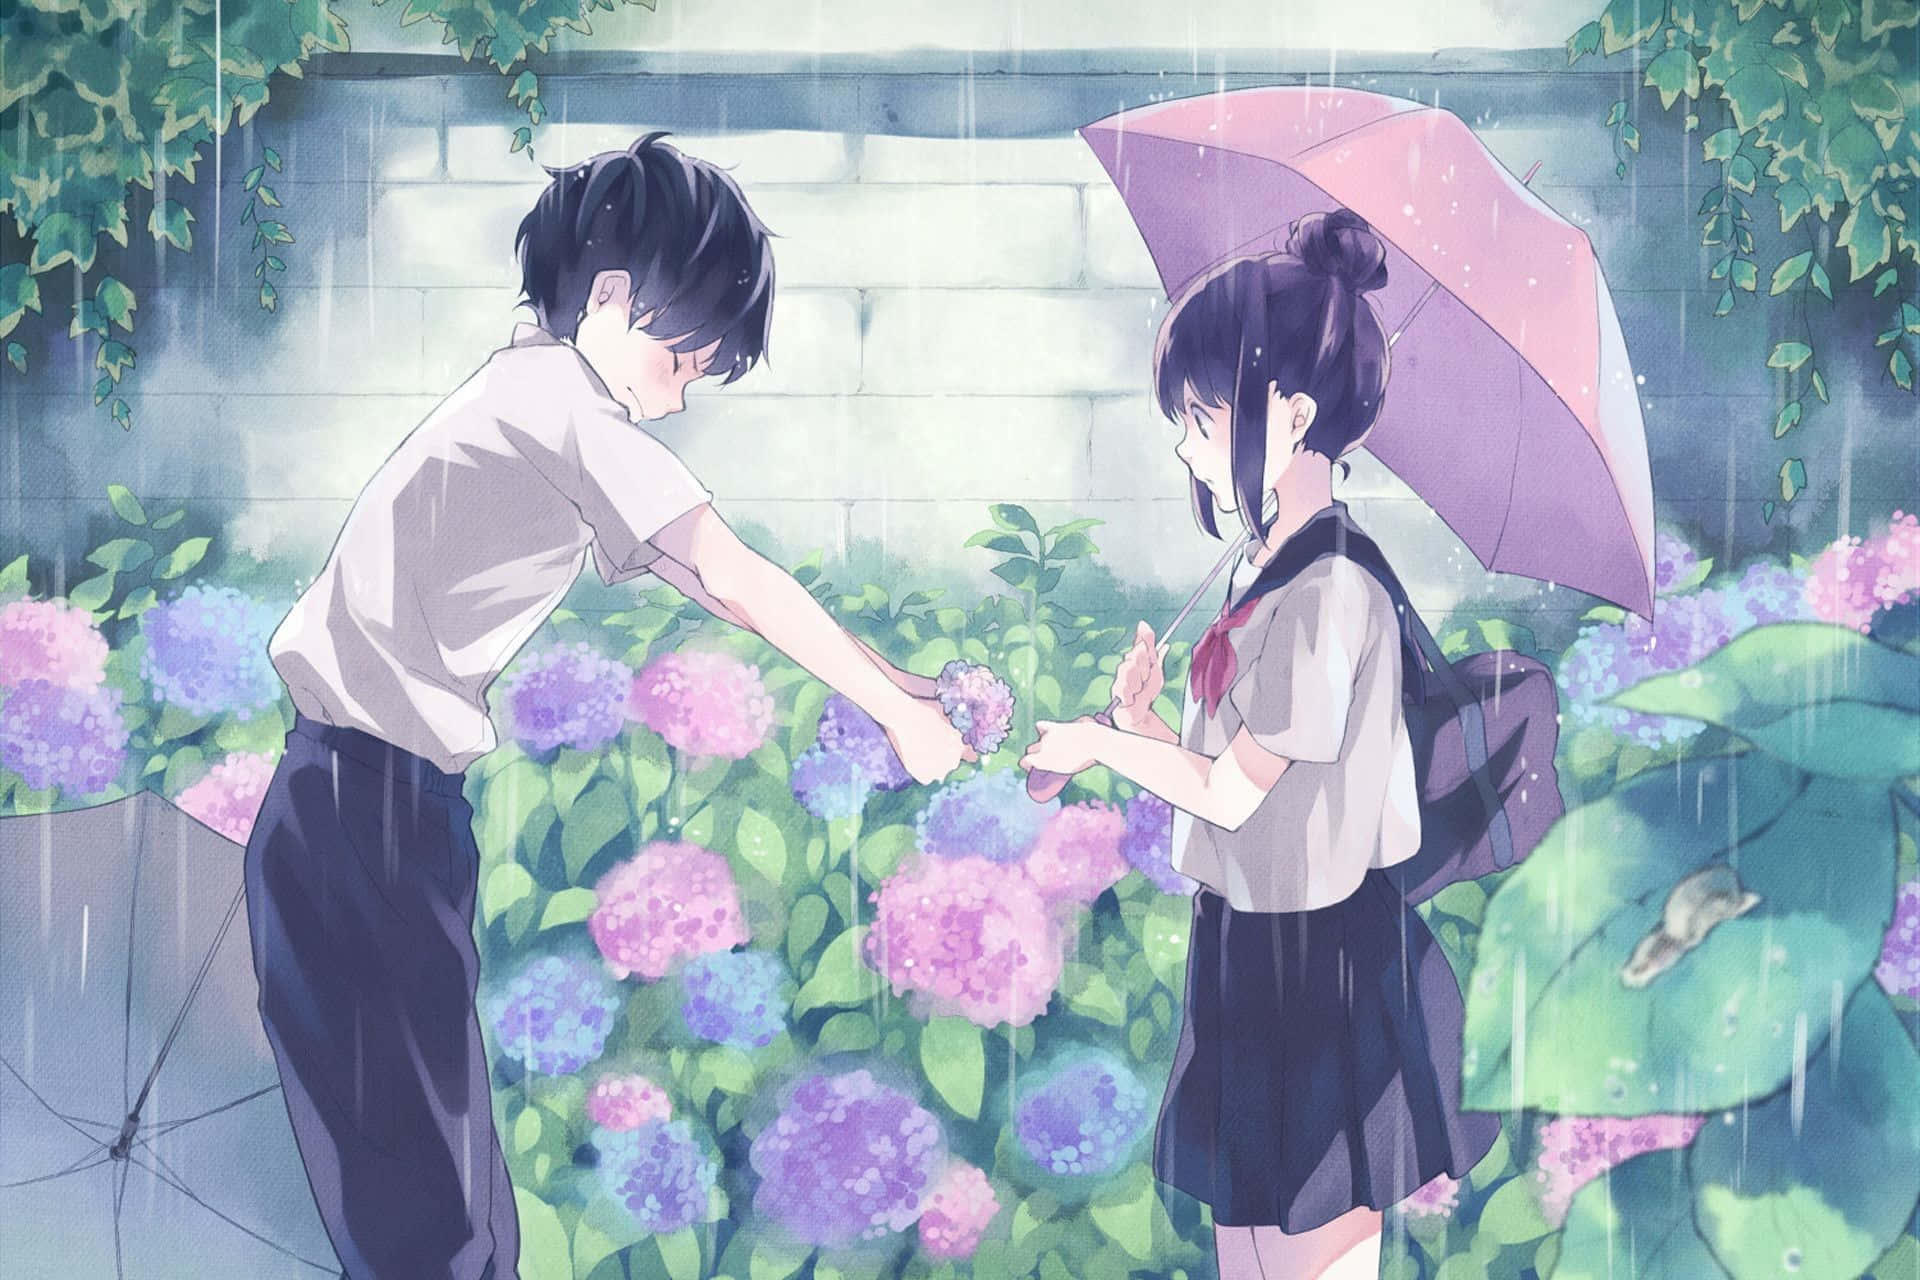 Adorabilecoppia Di Anime Che Condividono Un Momento Romantico In Una Notte Stellata